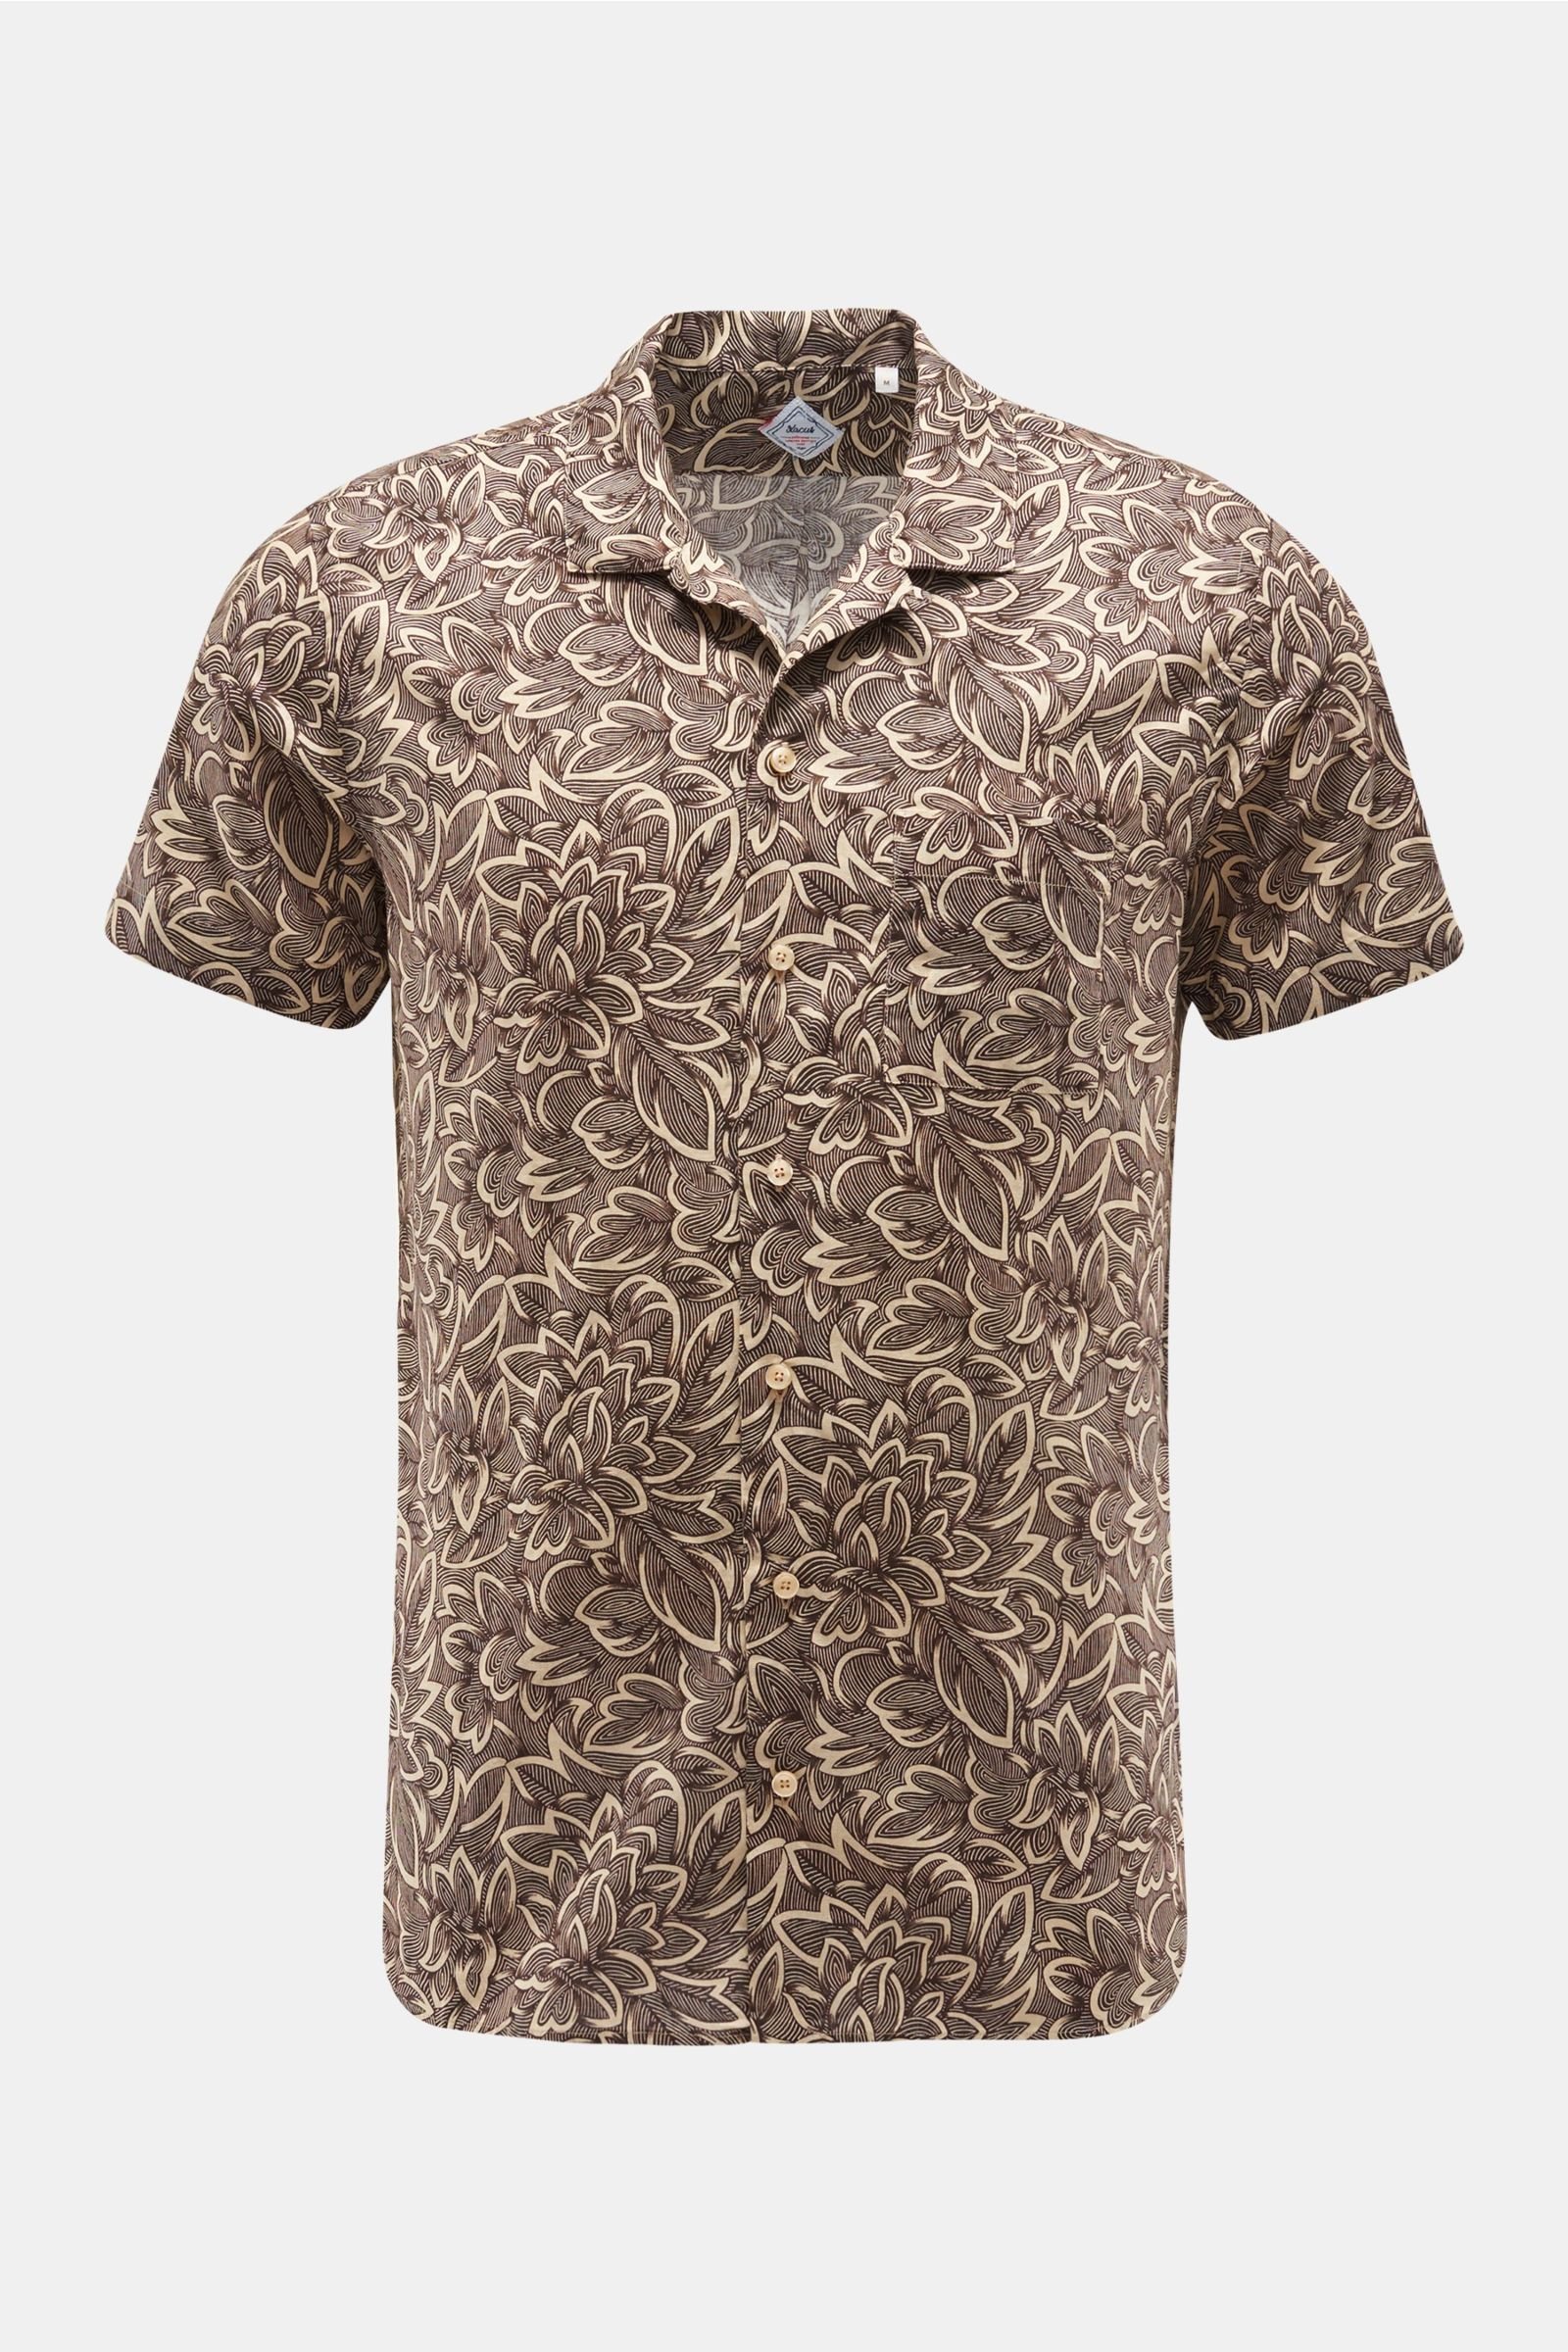 Short sleeve shirt Cuban collar dark brown/beige patterned